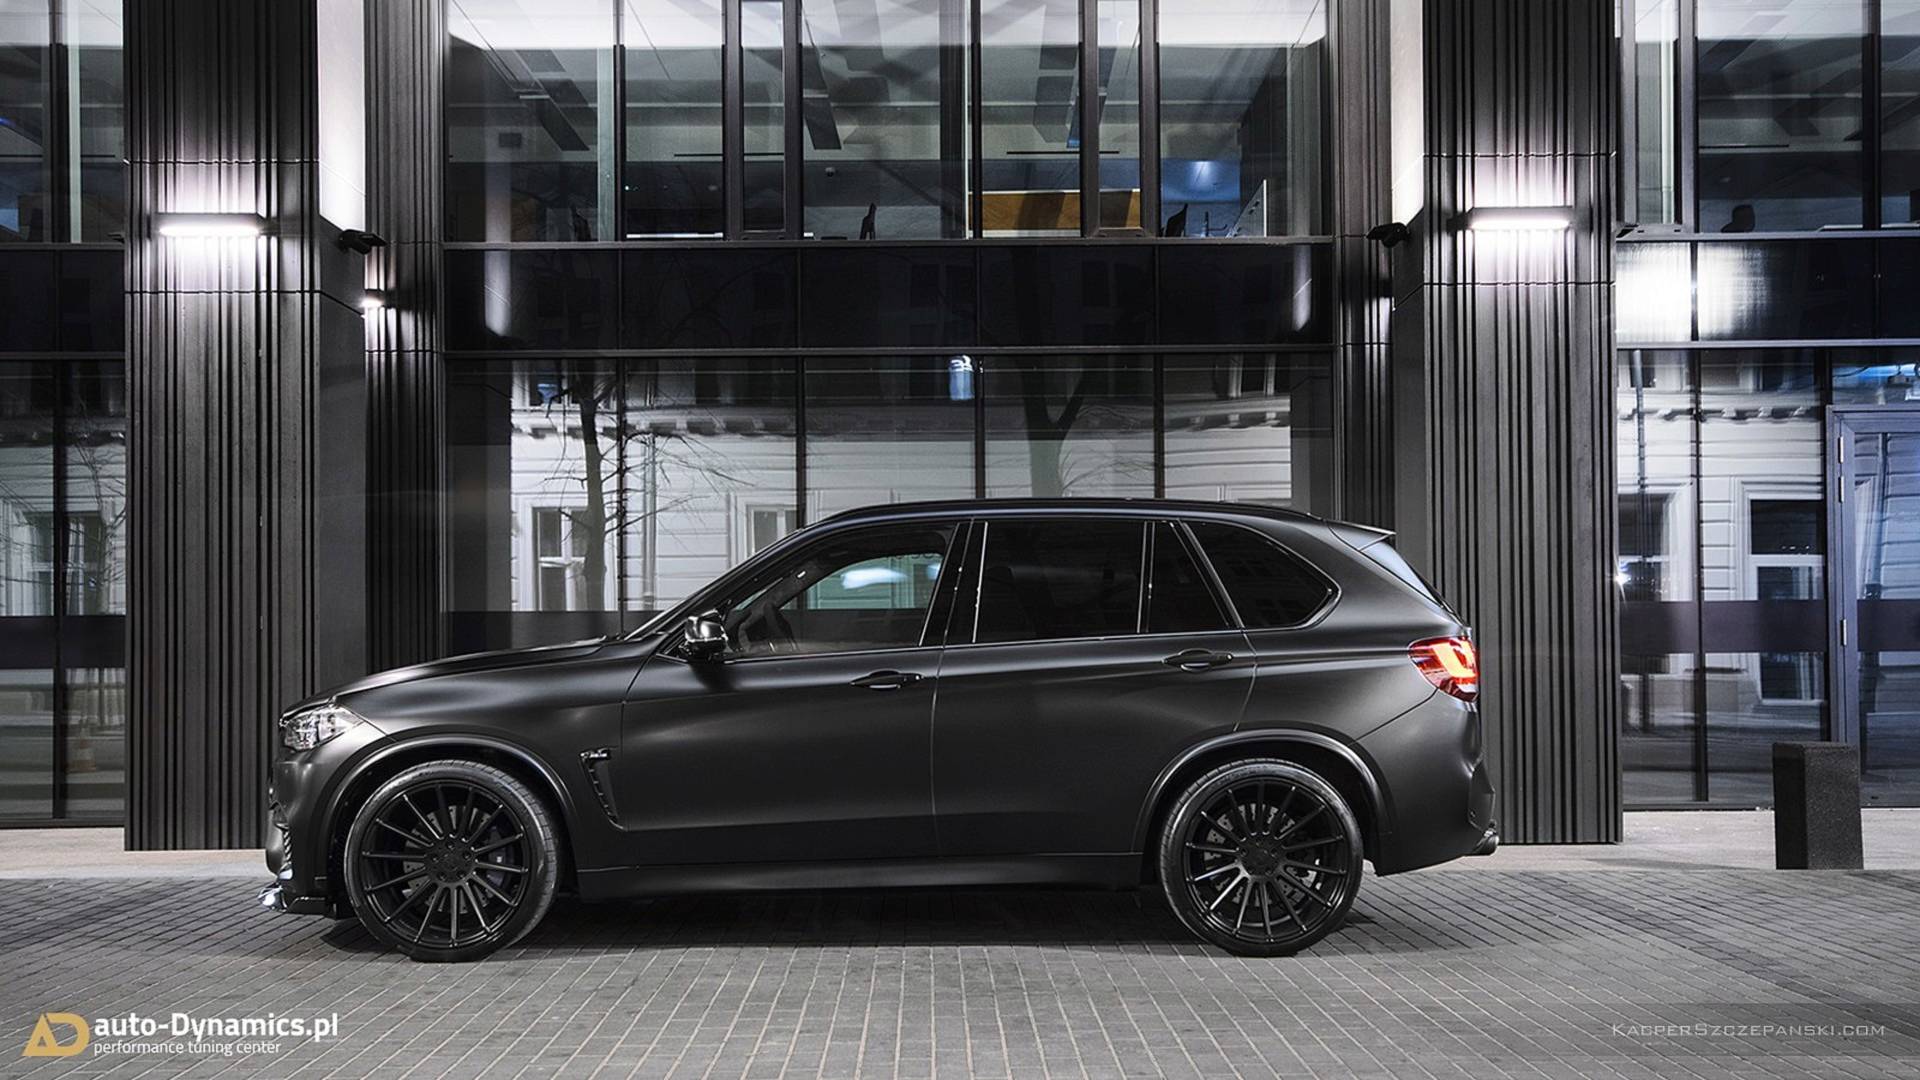 Auto-Dynamics превратило BMW X5 M в суперавтомобиль